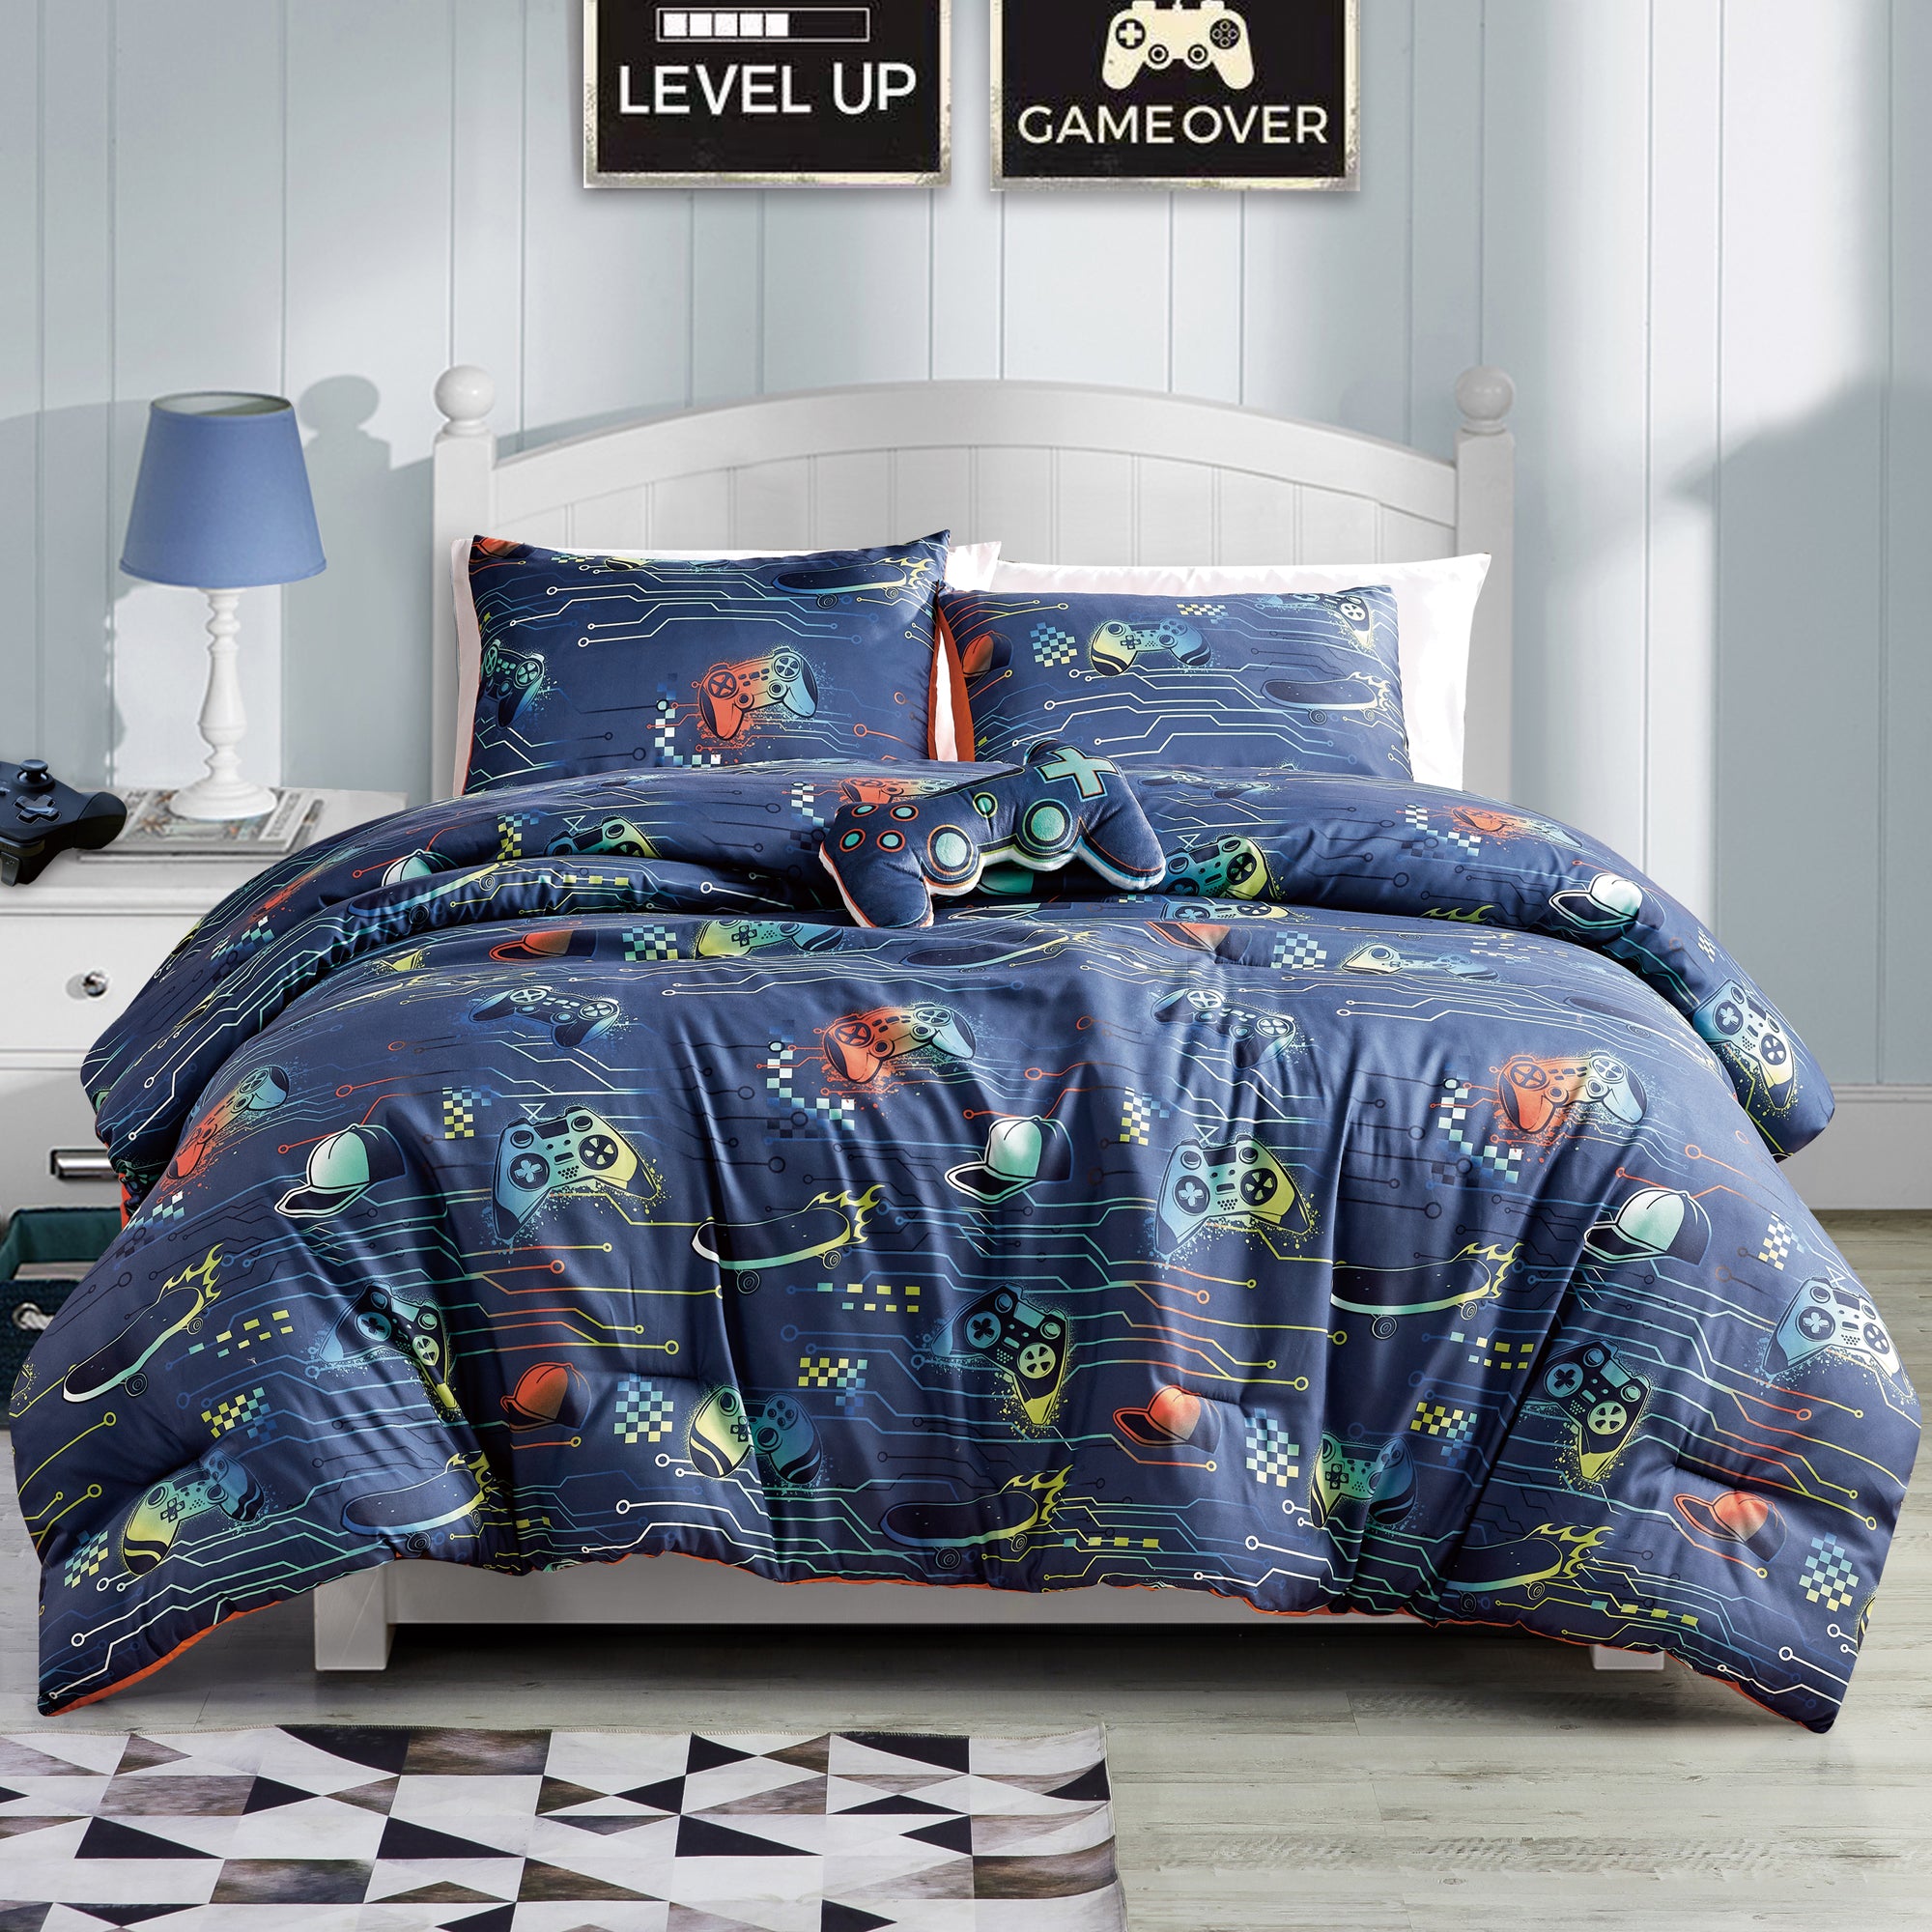 lv comforters queen size